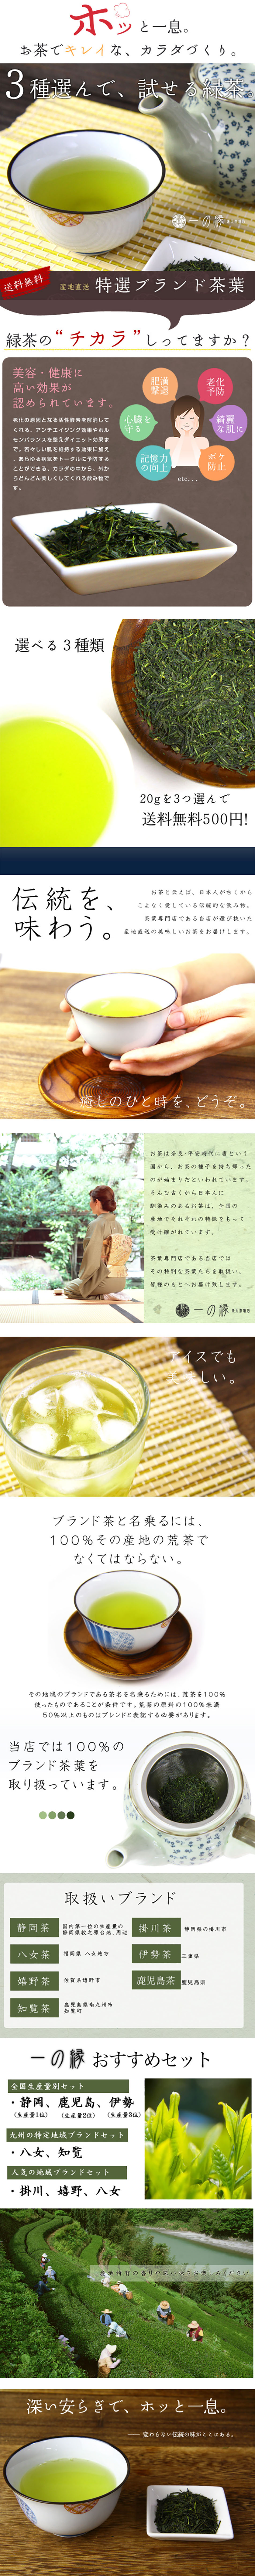 3種選んで試せる緑茶セット_pc_1